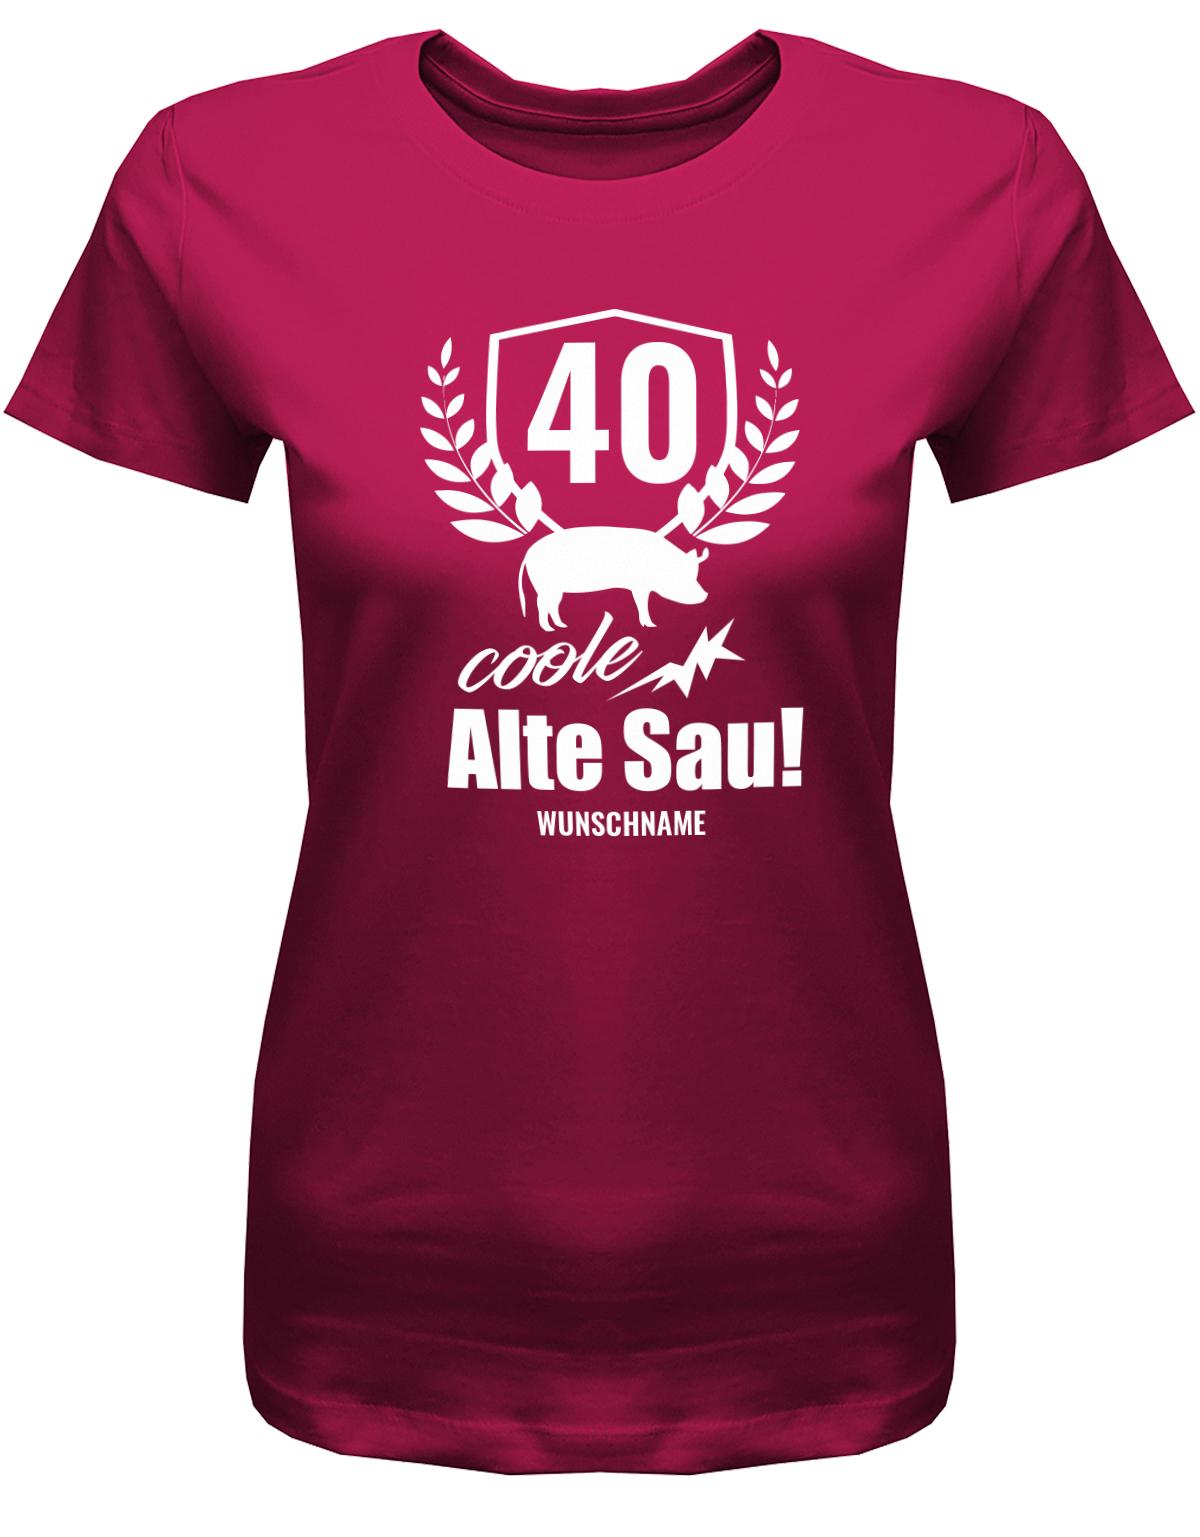 Lustiges T-Shirt zum 40. Geburtstag für die Frau Bedruckt mit 40 coole alte Sau personalisiert mit Name. Sorbet